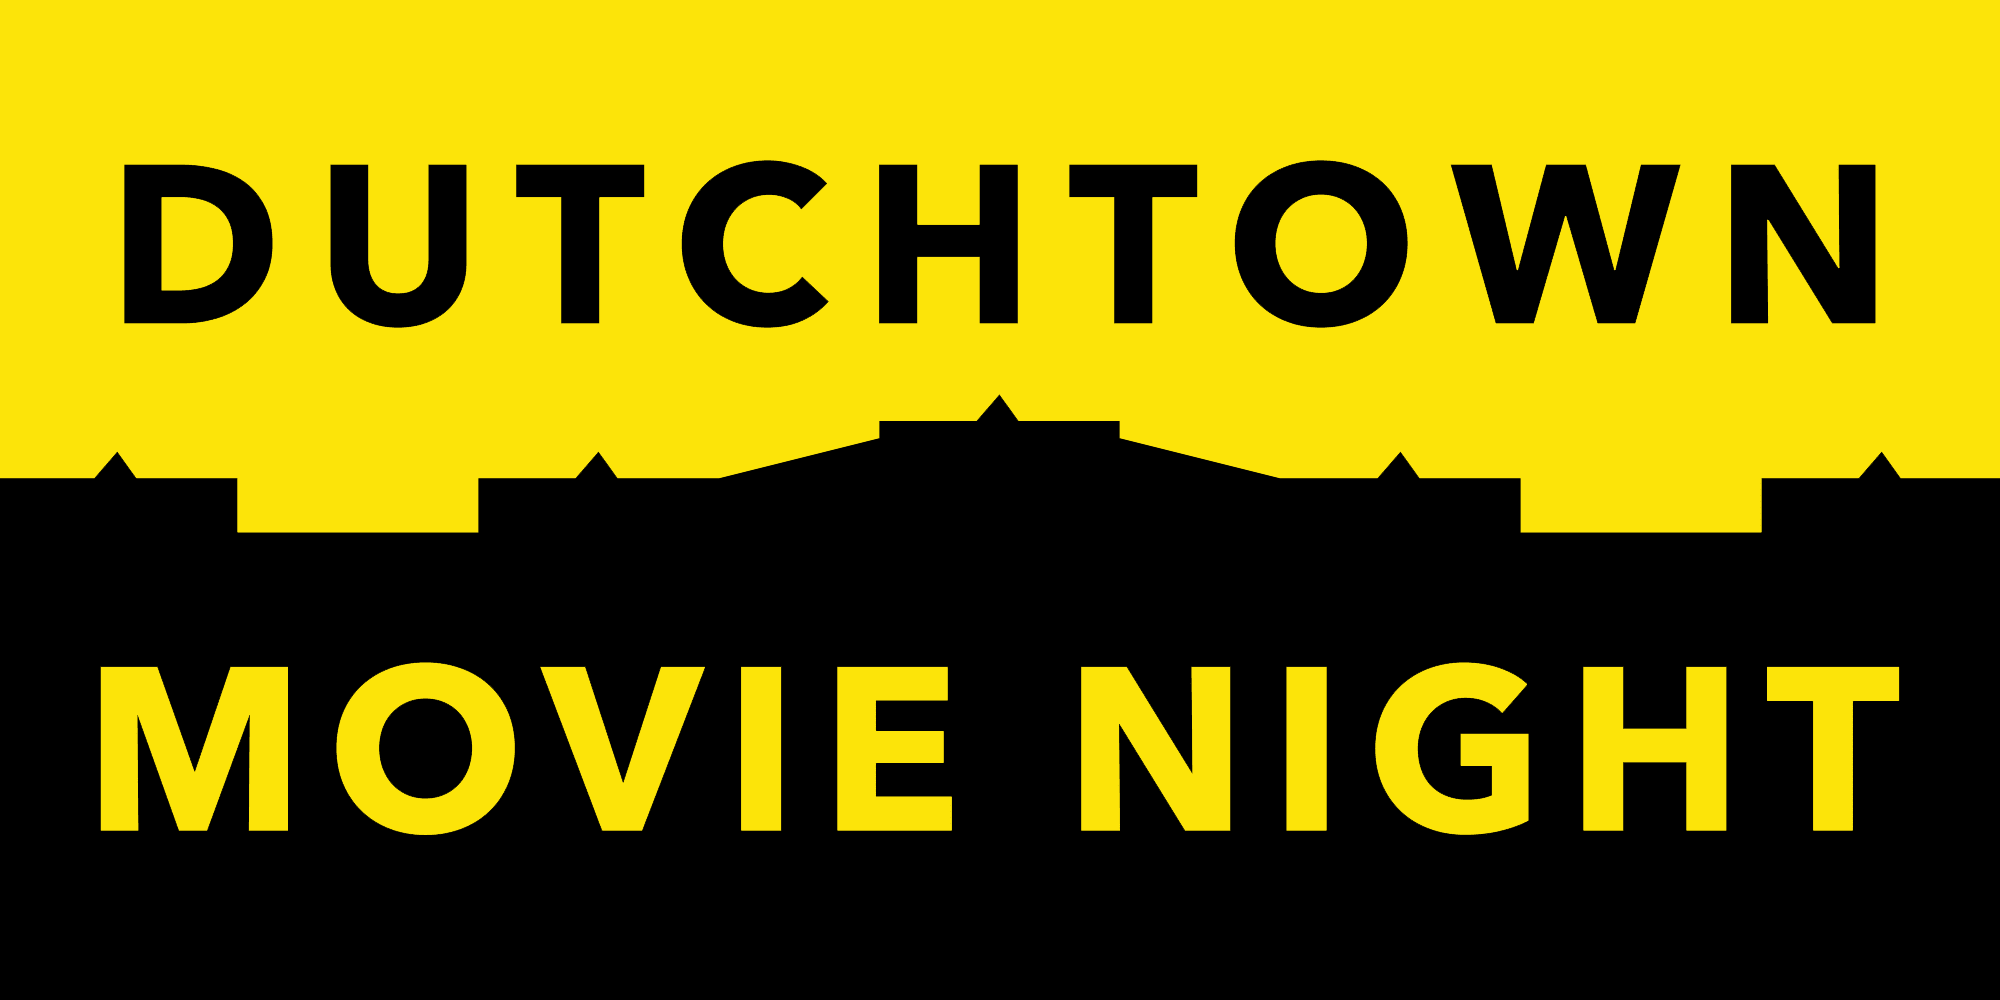 ليلة فيلم دوتشتاون.